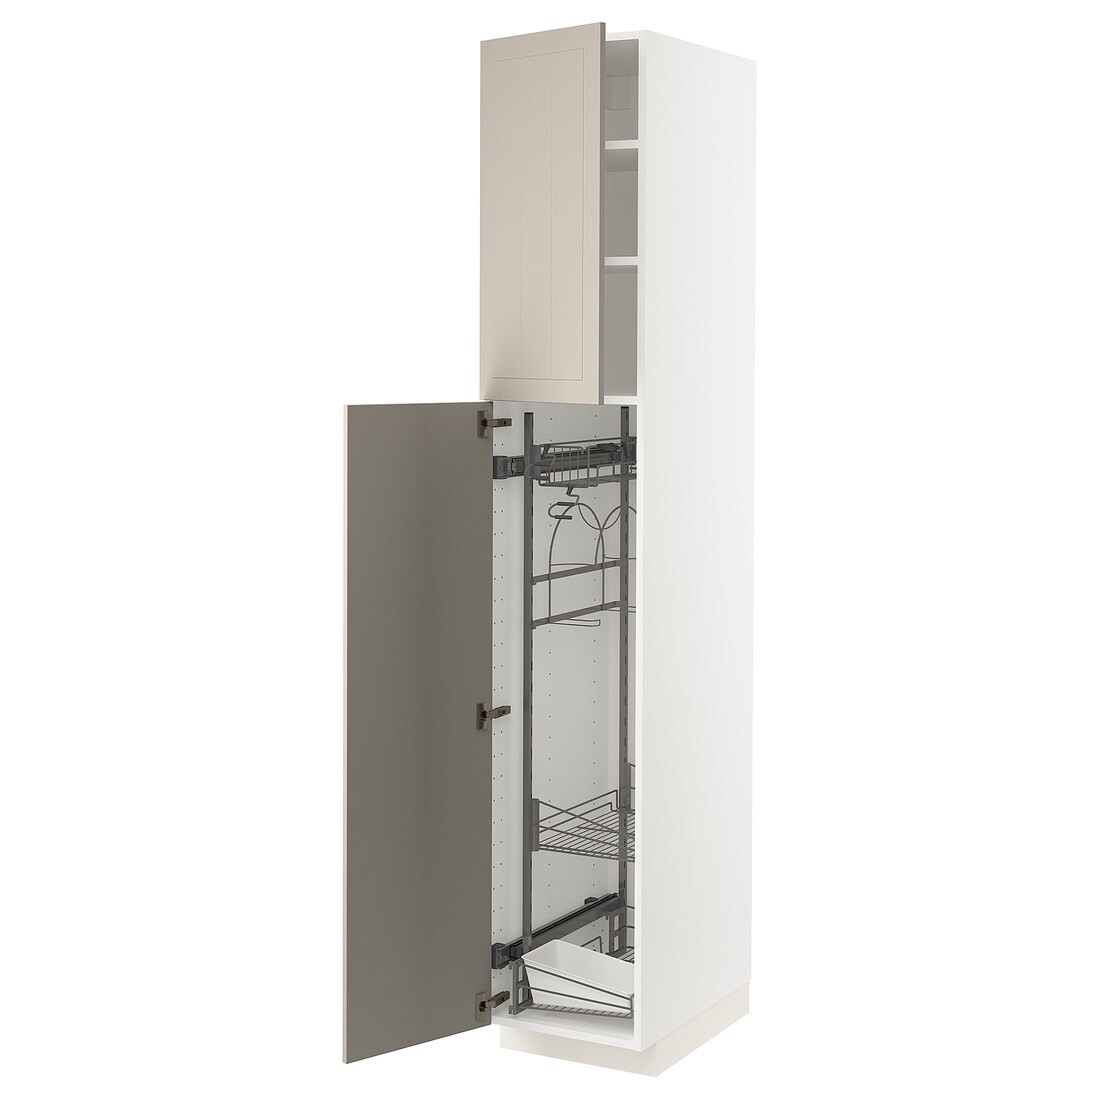 METOD МЕТОД Высокий шкаф с отделением для аксессуаров для уборки, белый / Stensund бежевый, 40x60x220 см